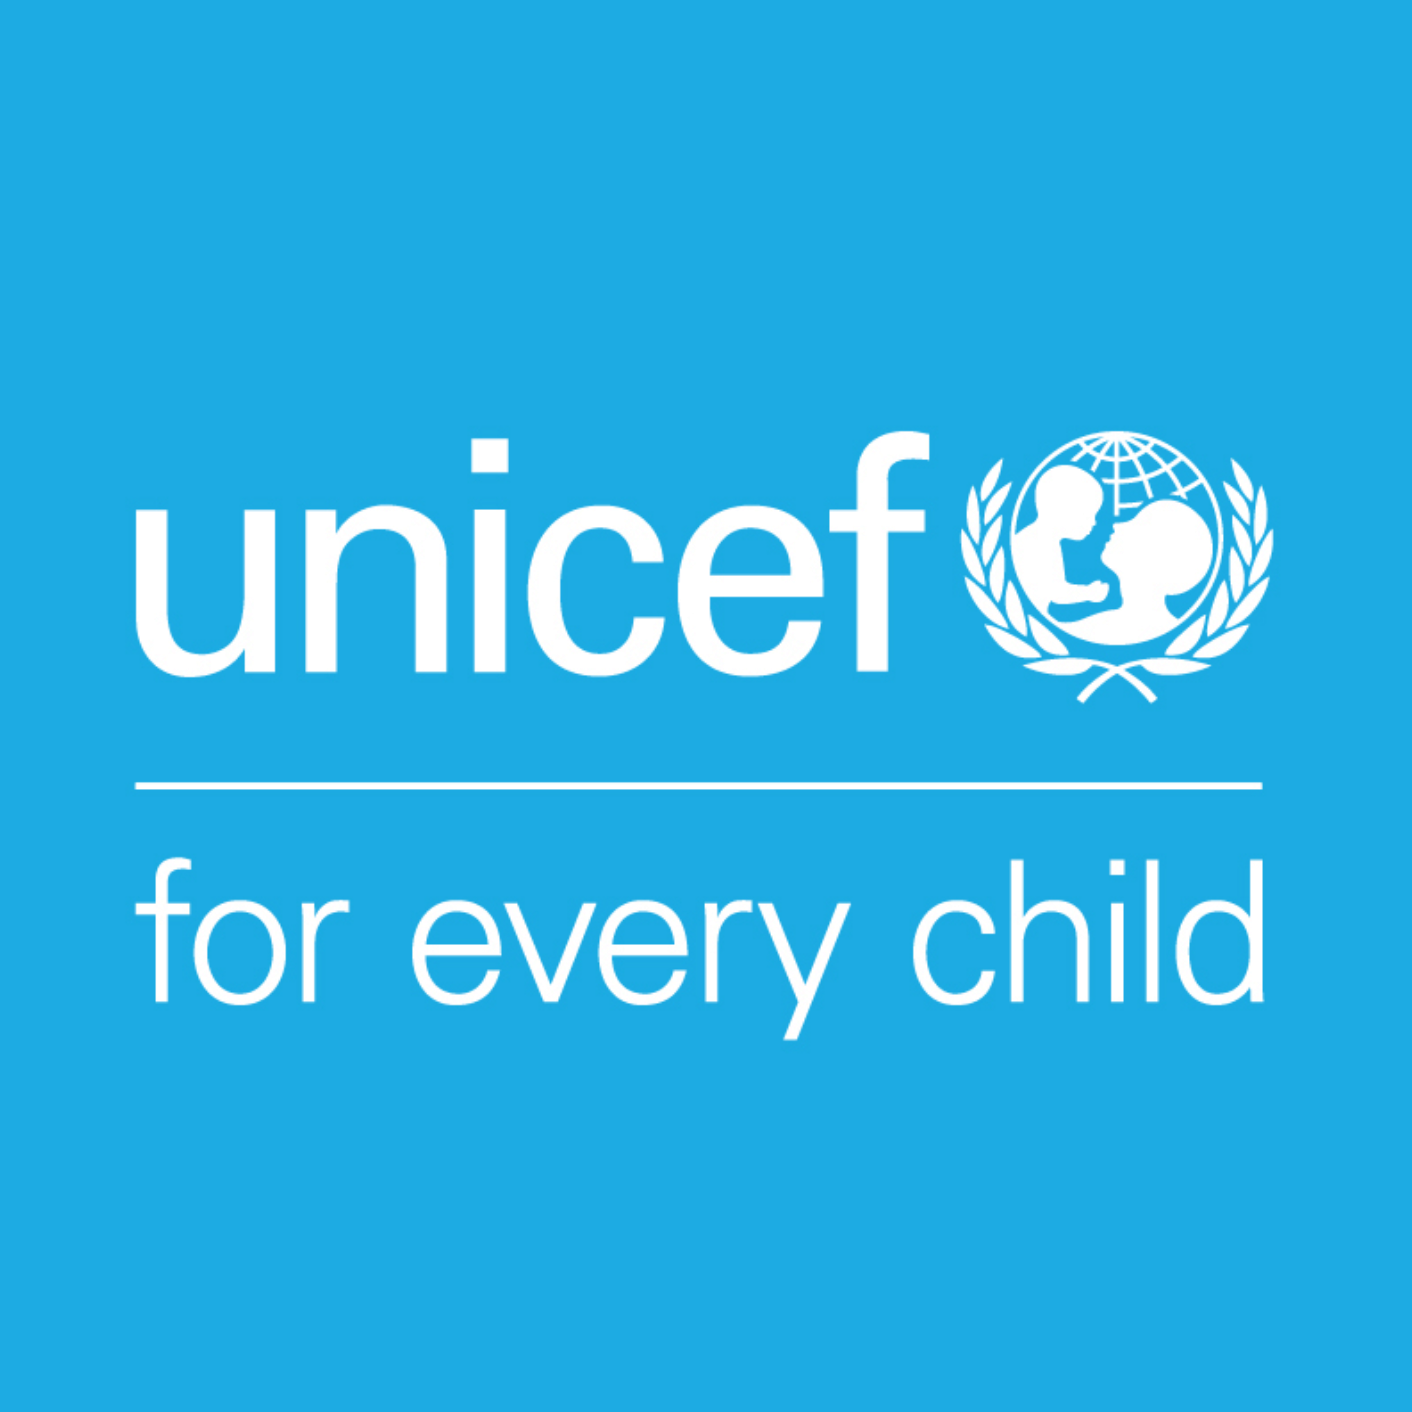 საქართველოს მთავრობა UNICEF-ის მხარდაჭერით, ერთჯერად ფინანსურ დახმარებას გაუწევს უკრაინიდან დევნილ ბავშვებს